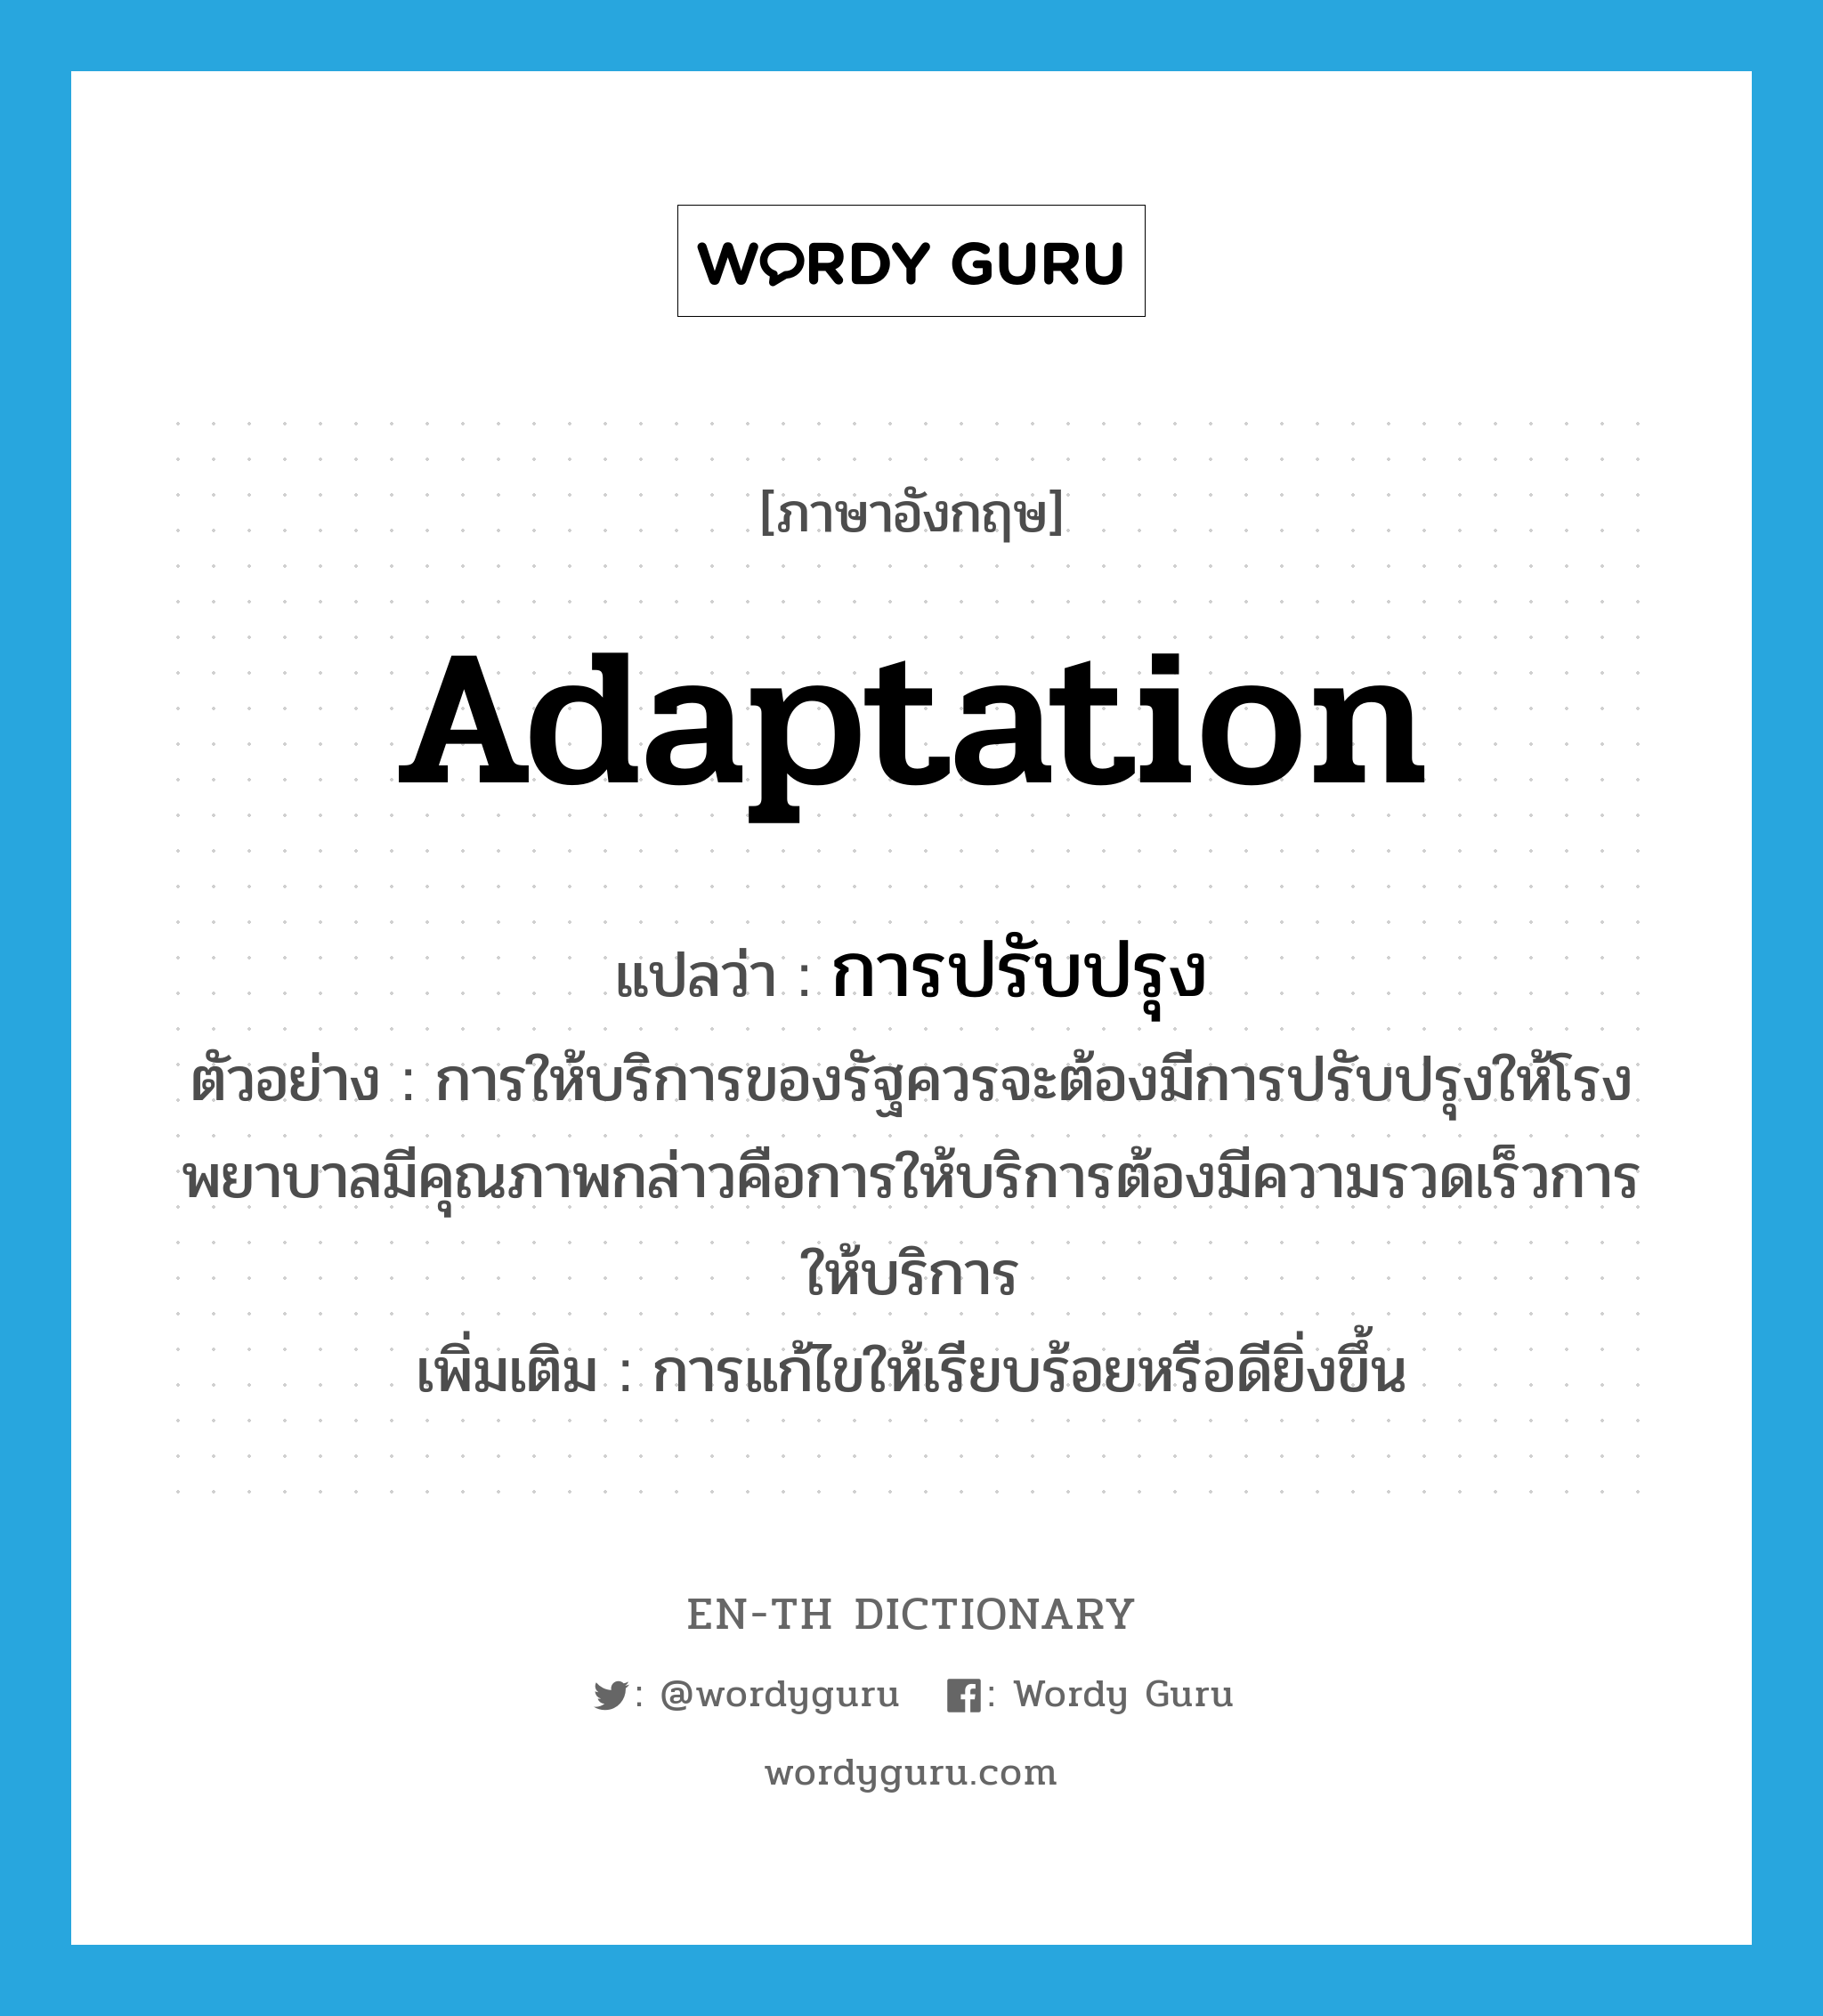 adaptation แปลว่า?, คำศัพท์ภาษาอังกฤษ adaptation แปลว่า การปรับปรุง ประเภท N ตัวอย่าง การให้บริการของรัฐควรจะต้องมีการปรับปรุงให้โรงพยาบาลมีคุณภาพกล่าวคือการให้บริการต้องมีความรวดเร็วการให้บริการ เพิ่มเติม การแก้ไขให้เรียบร้อยหรือดียิ่งขึ้น หมวด N